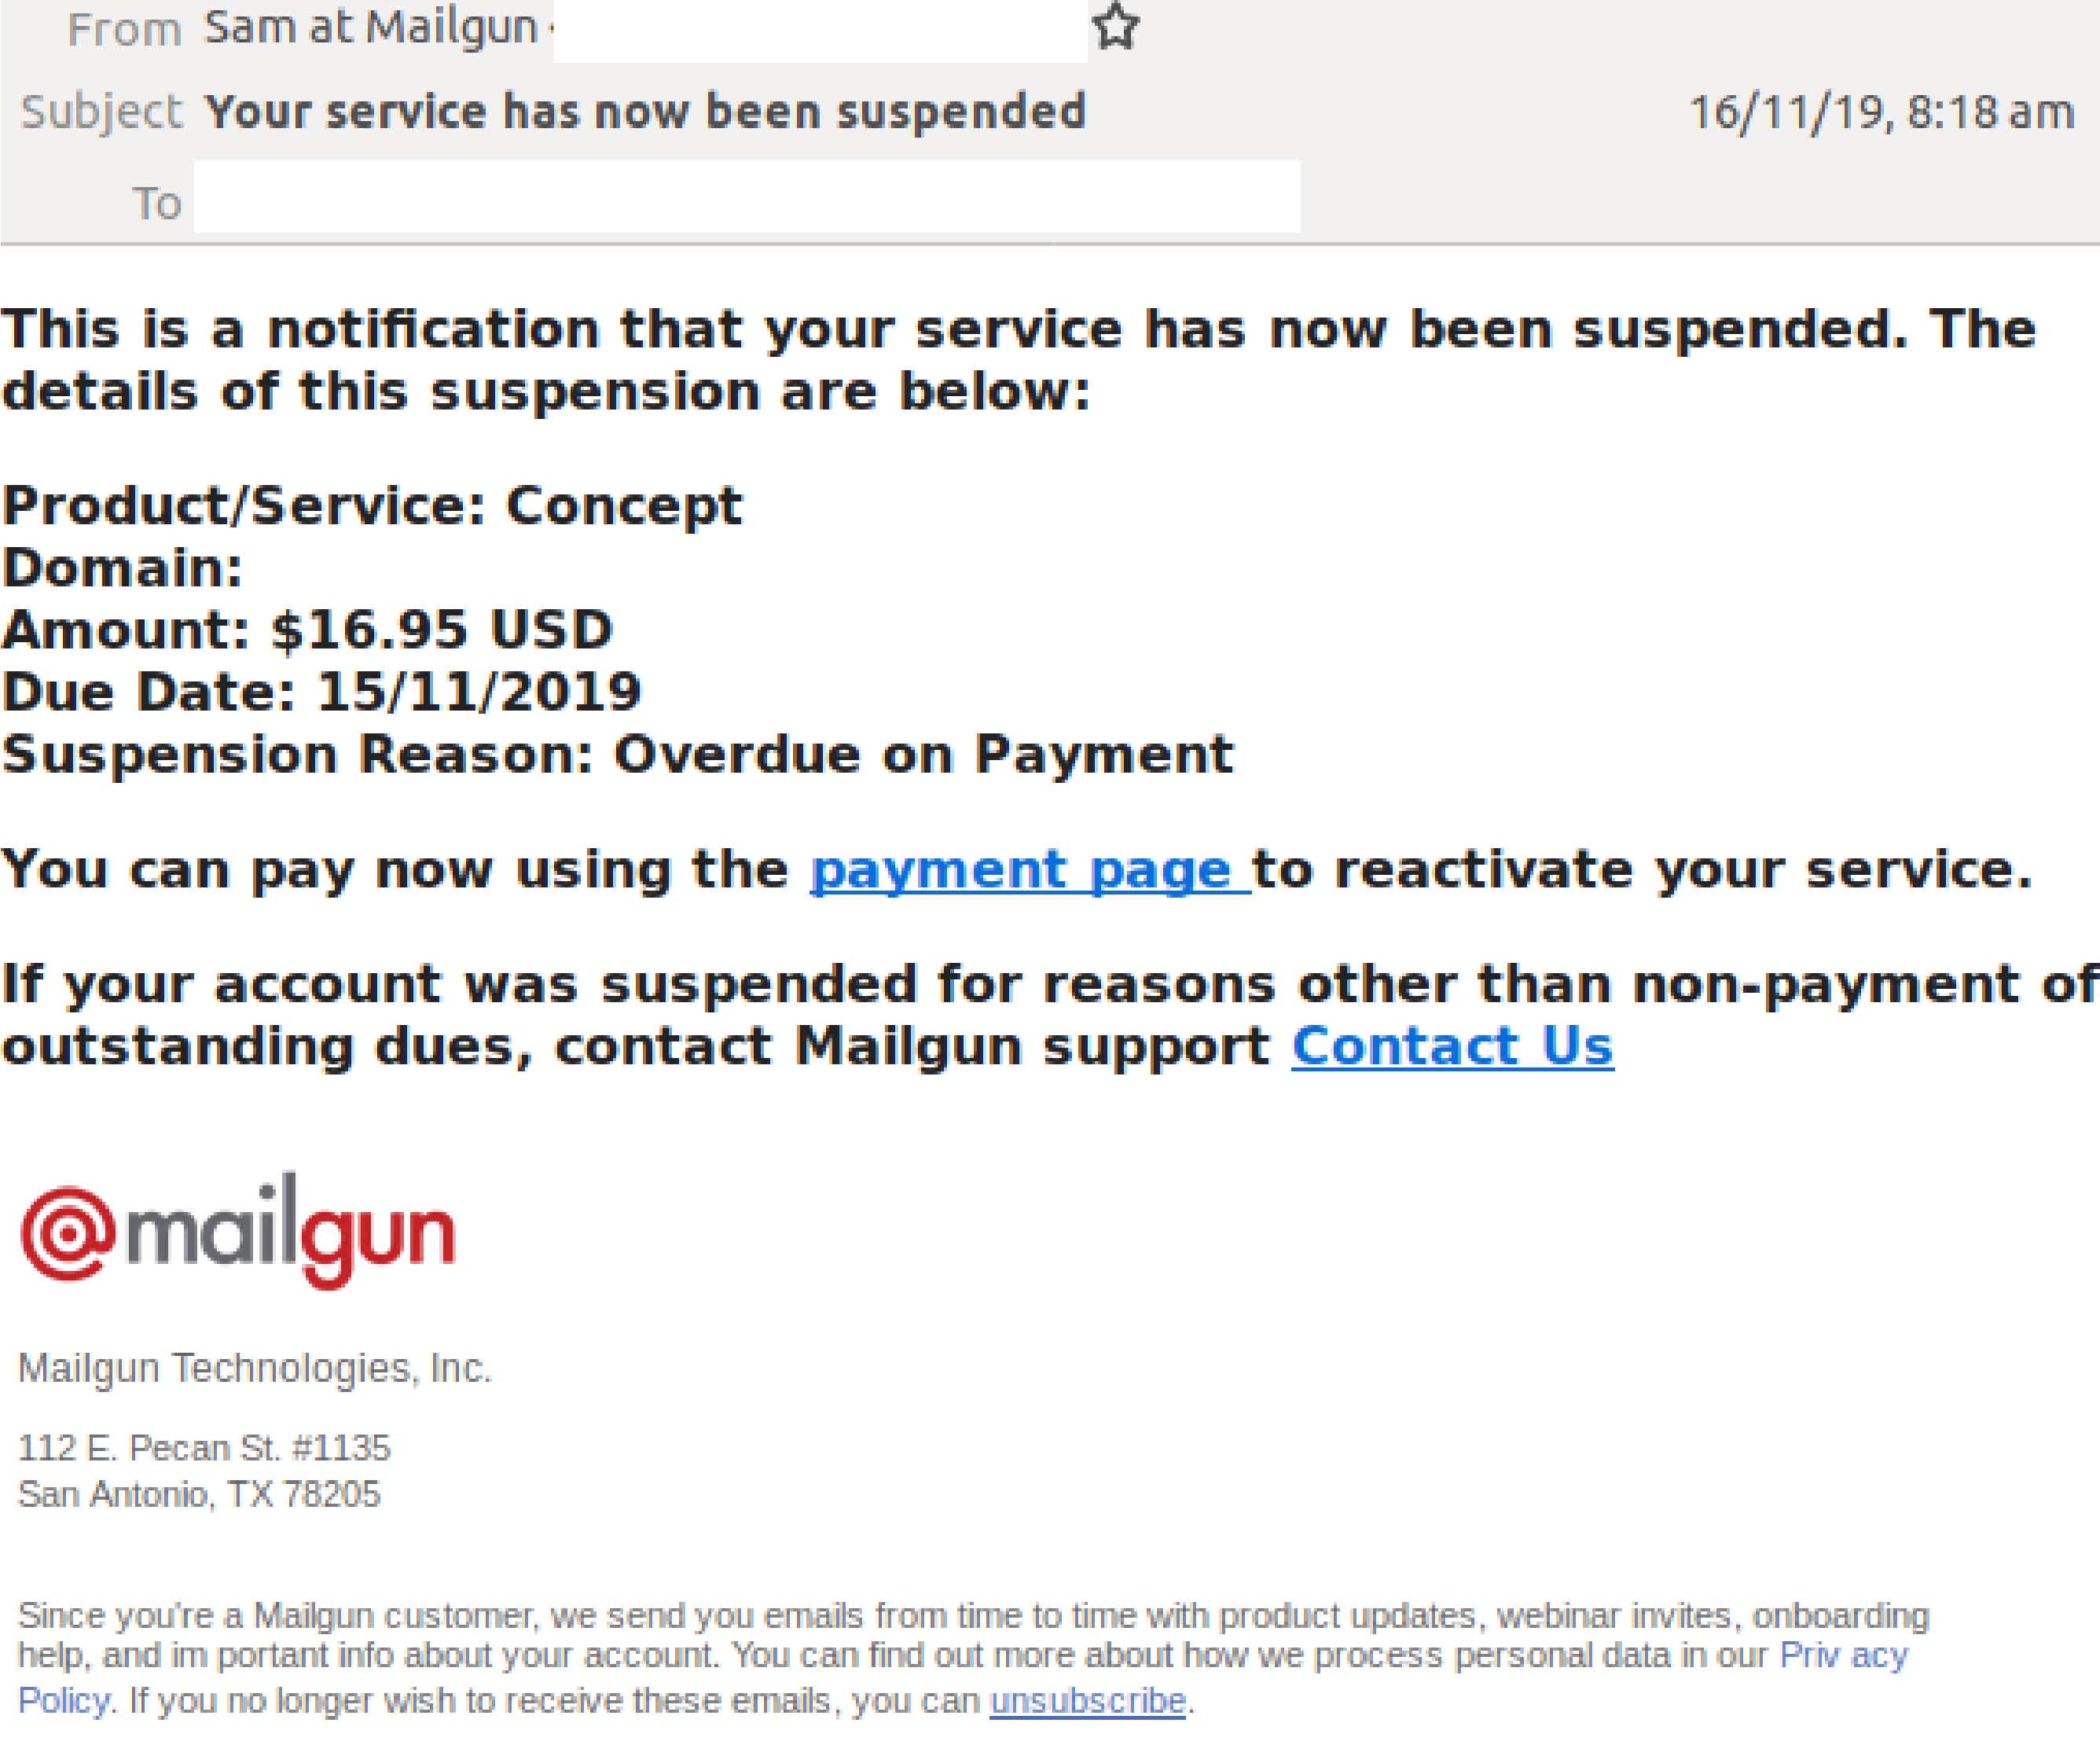 Capture d’écran d’un email montrant une tentative d’hameçonnage de la part d’une personne se faisant passer pour l’équipe de renouvellement d’abonnements de Mailgun.